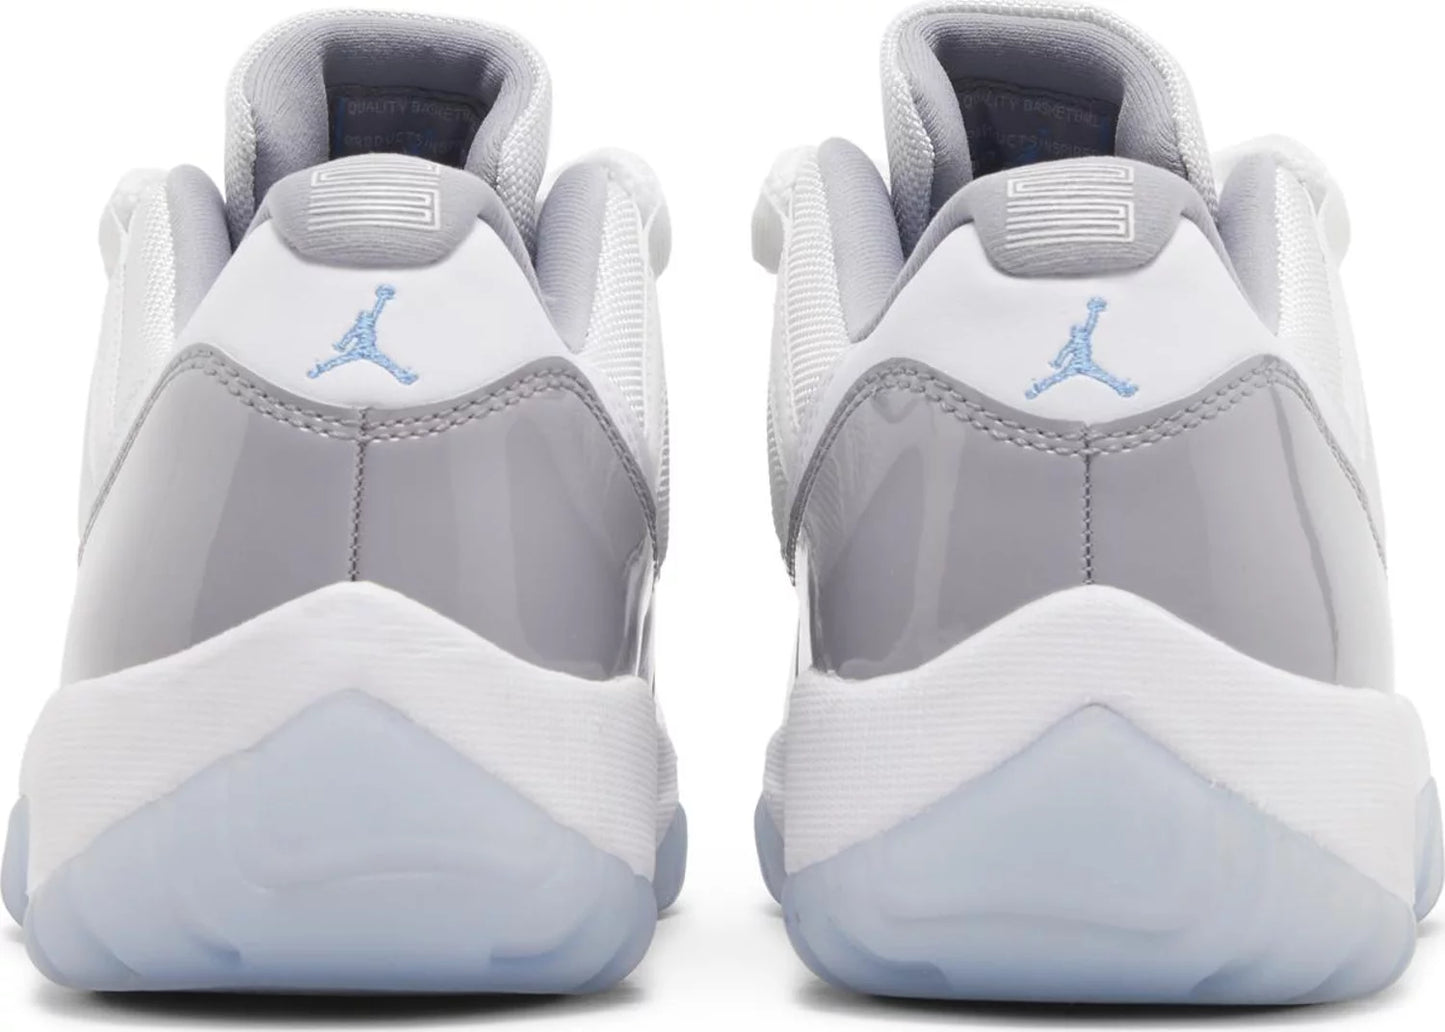 NIKE x AIR JORDAN - Nike Air Jordan 11 Retro Low Cement Grey Sneakers